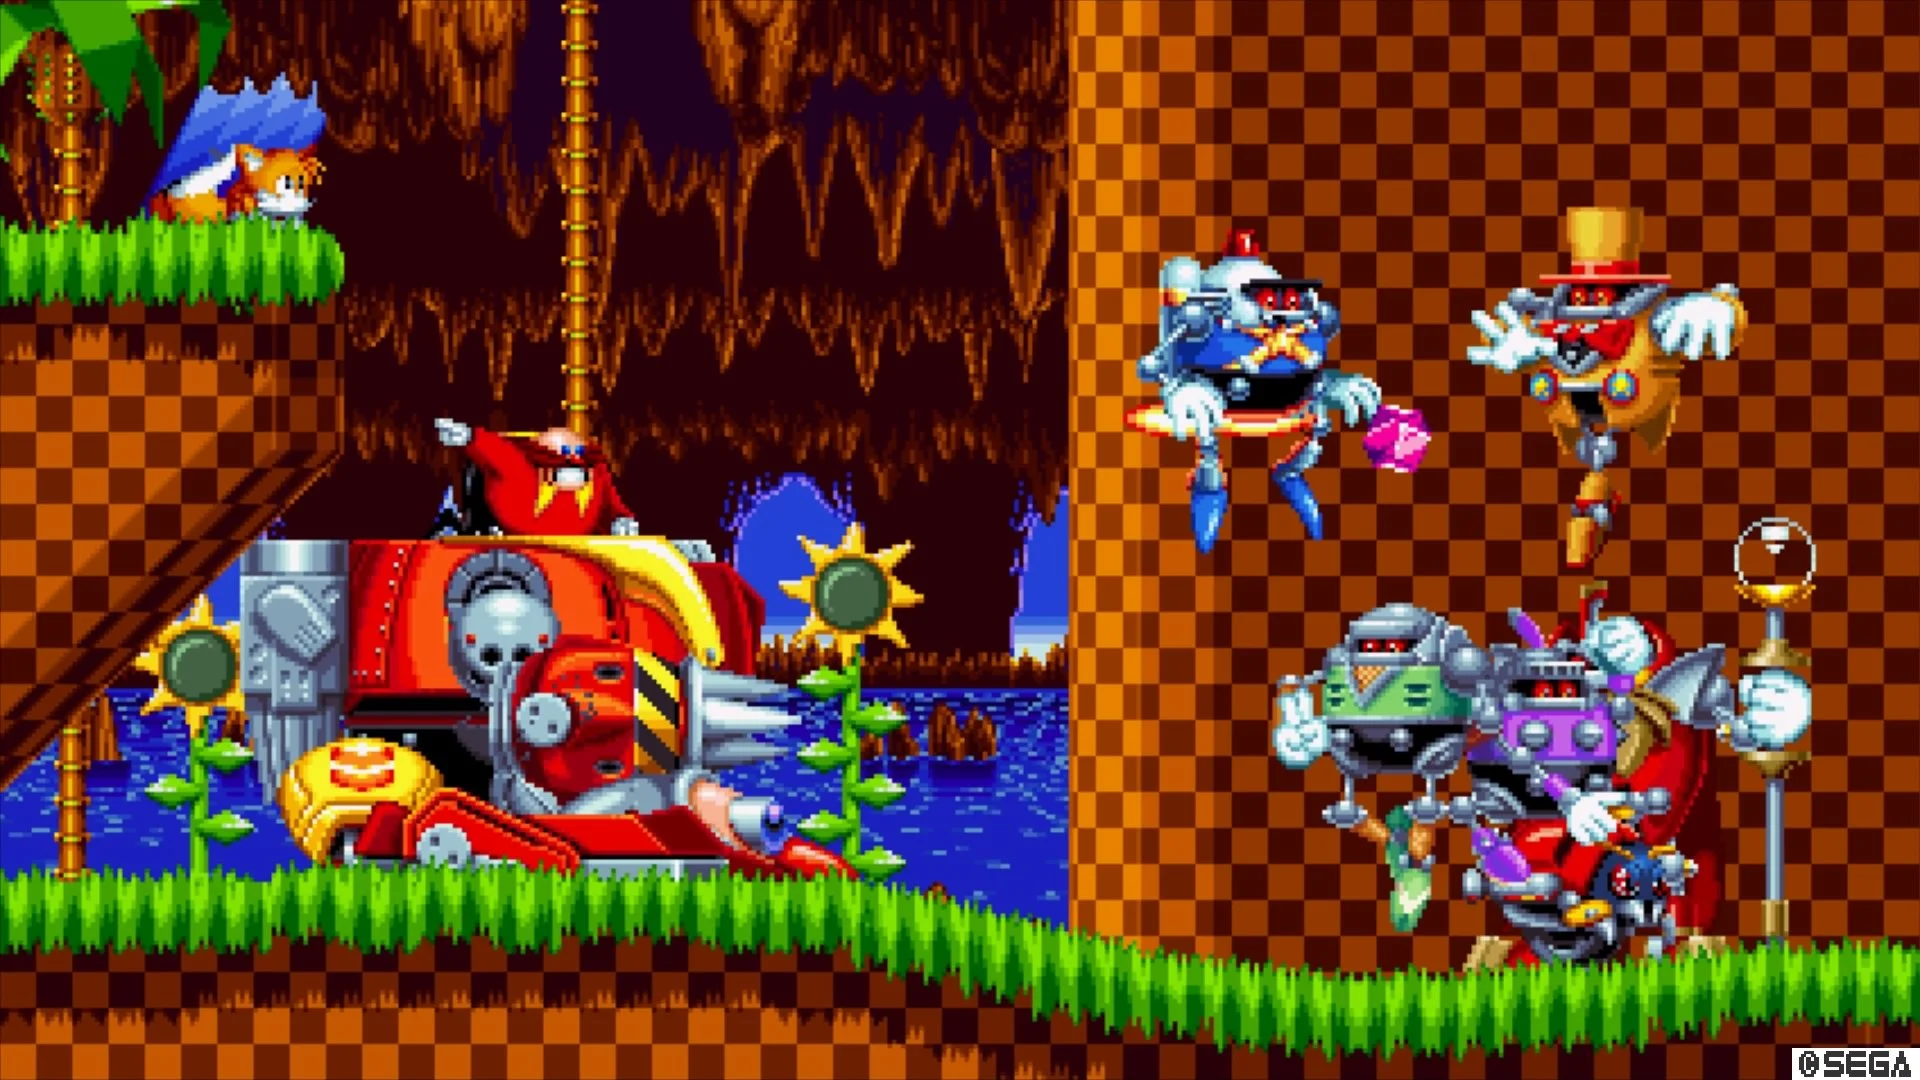 Серия Sonic the Hedgehog всегда славилась своей крайне преданной фанбазой. Любить игры про синего ежа после их Золотого века на Mega Drive было крайне тяжело: разработчики новых выпусков то и дело находили способы испортить, казалось бы, столь простую и работающую геймплейную схему. На помощь Sega пришли фанаты, знающие лучше самих разработчиков, как сделать лучше. И тут надо сказать спасибо Sega за решение дать этим фанатам шанс.